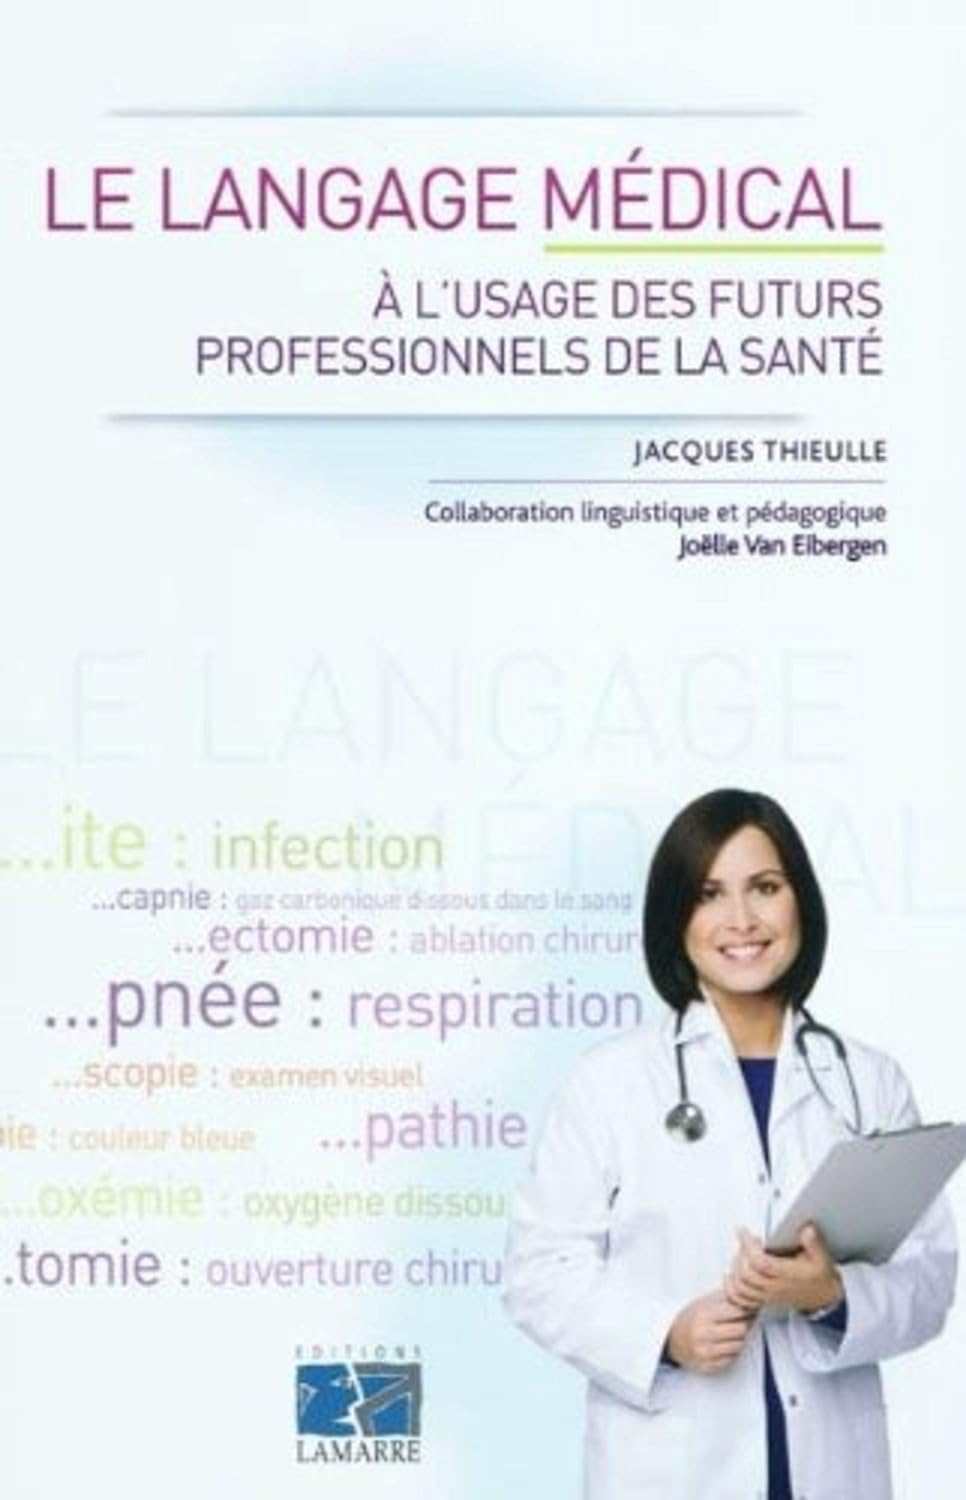 Le langage médical à l'usage des futurs professionnels de la santé - Jacques Thieullle